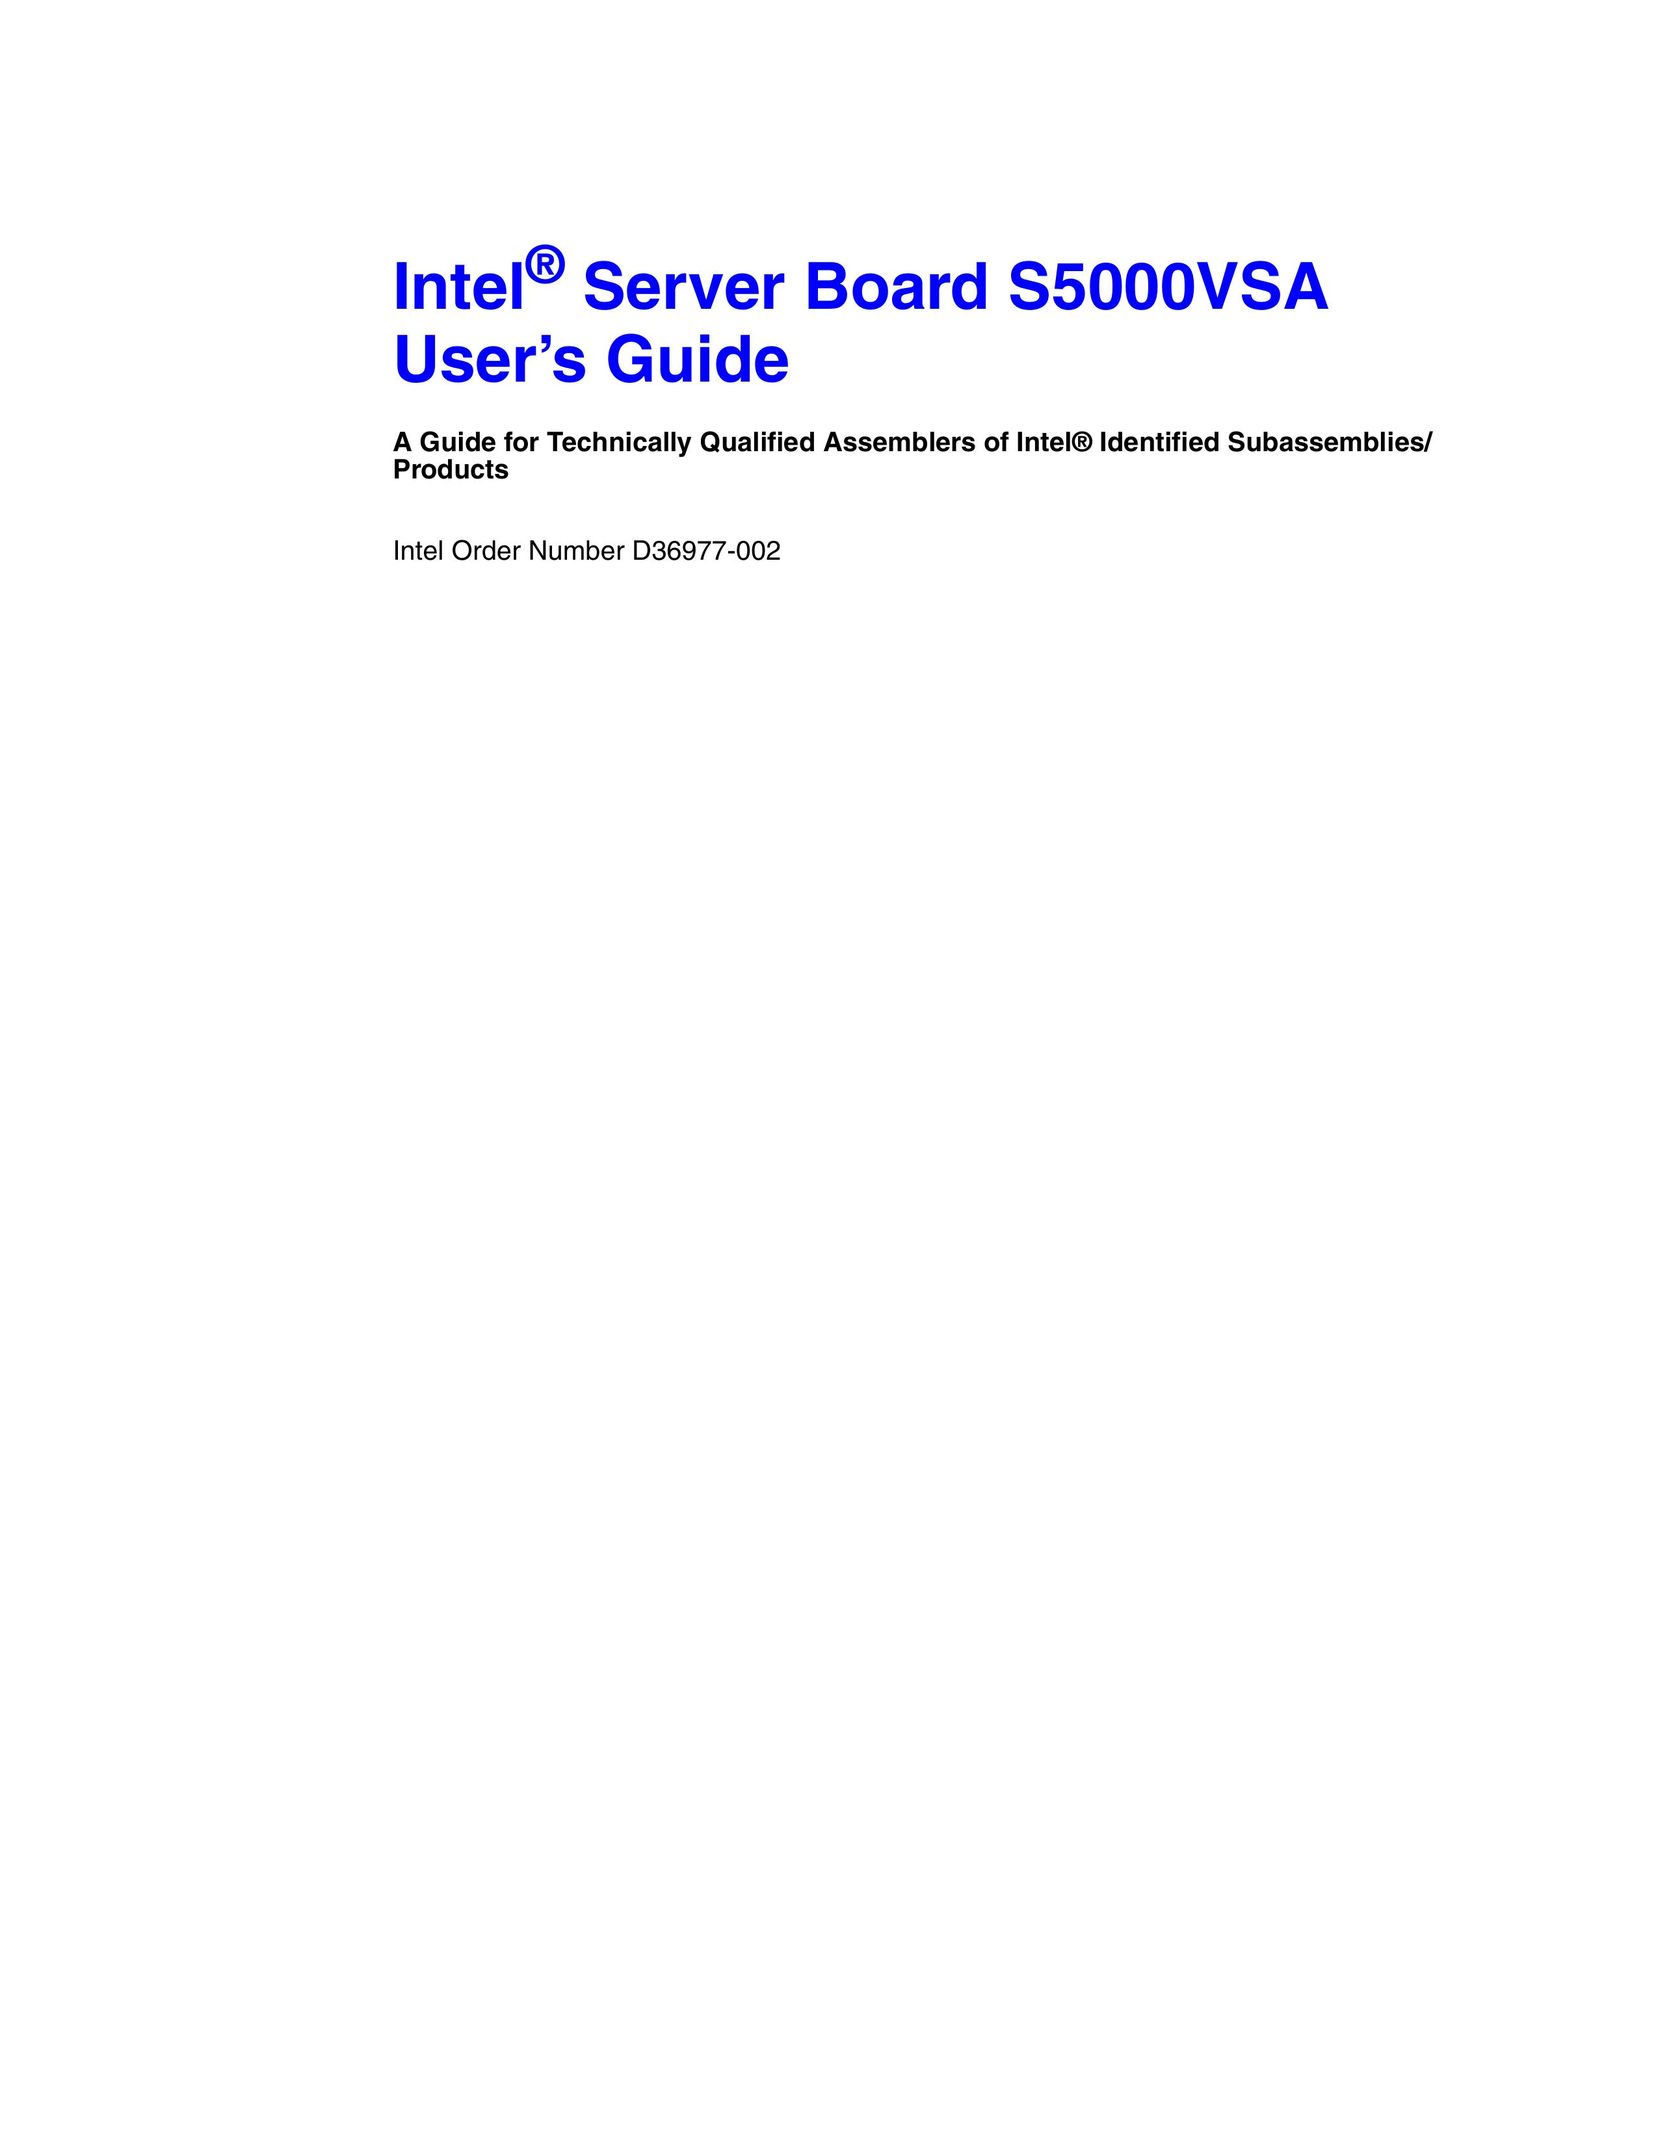 Intel S5000VSA Server User Manual